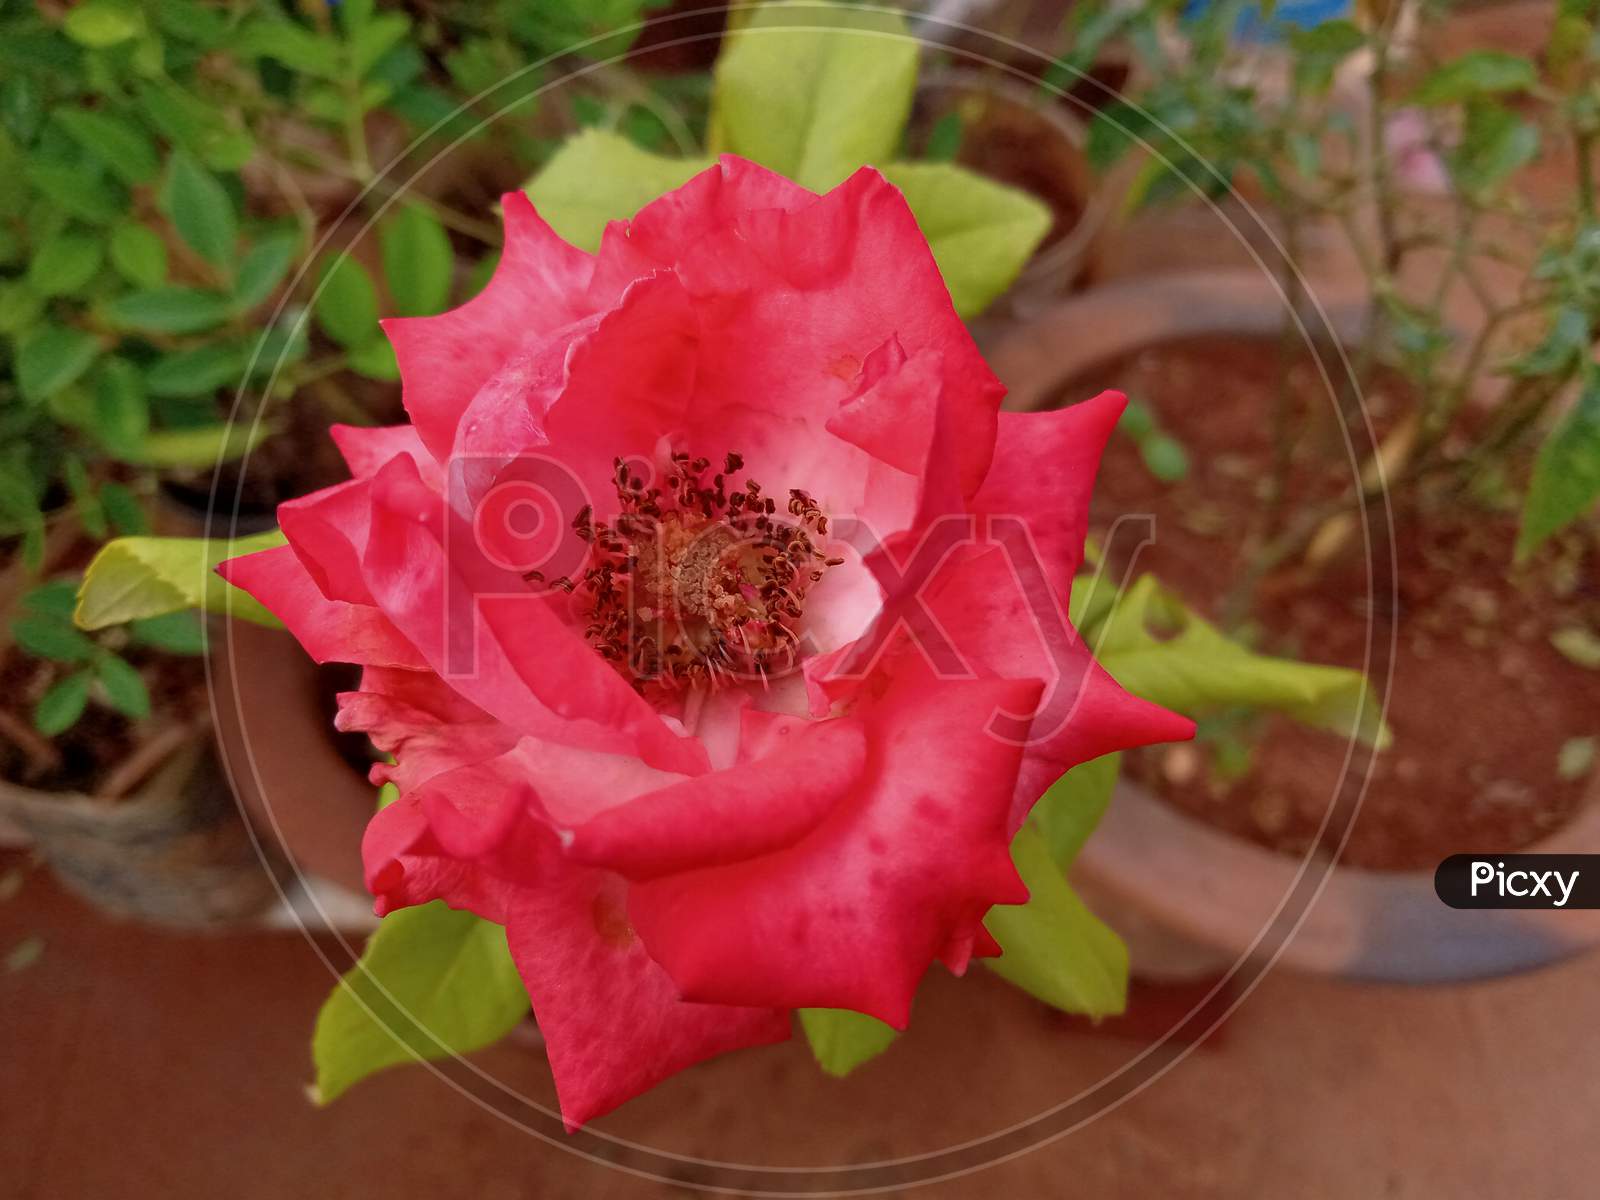 Rose flower in garden